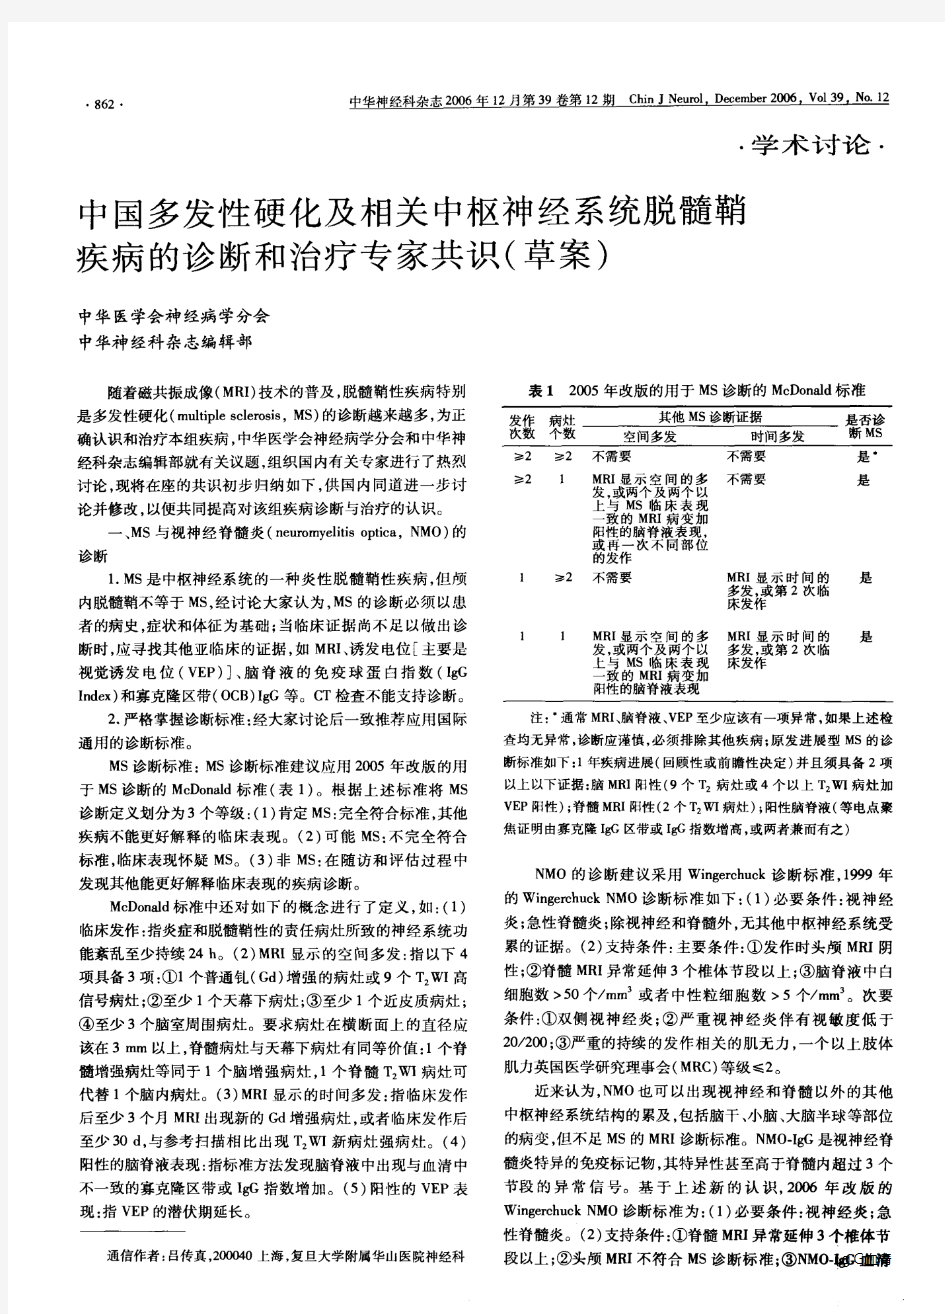 X中国多发性硬化及相关中枢神经系统脱髓鞘疾病的诊断和治疗专家共识(草案)